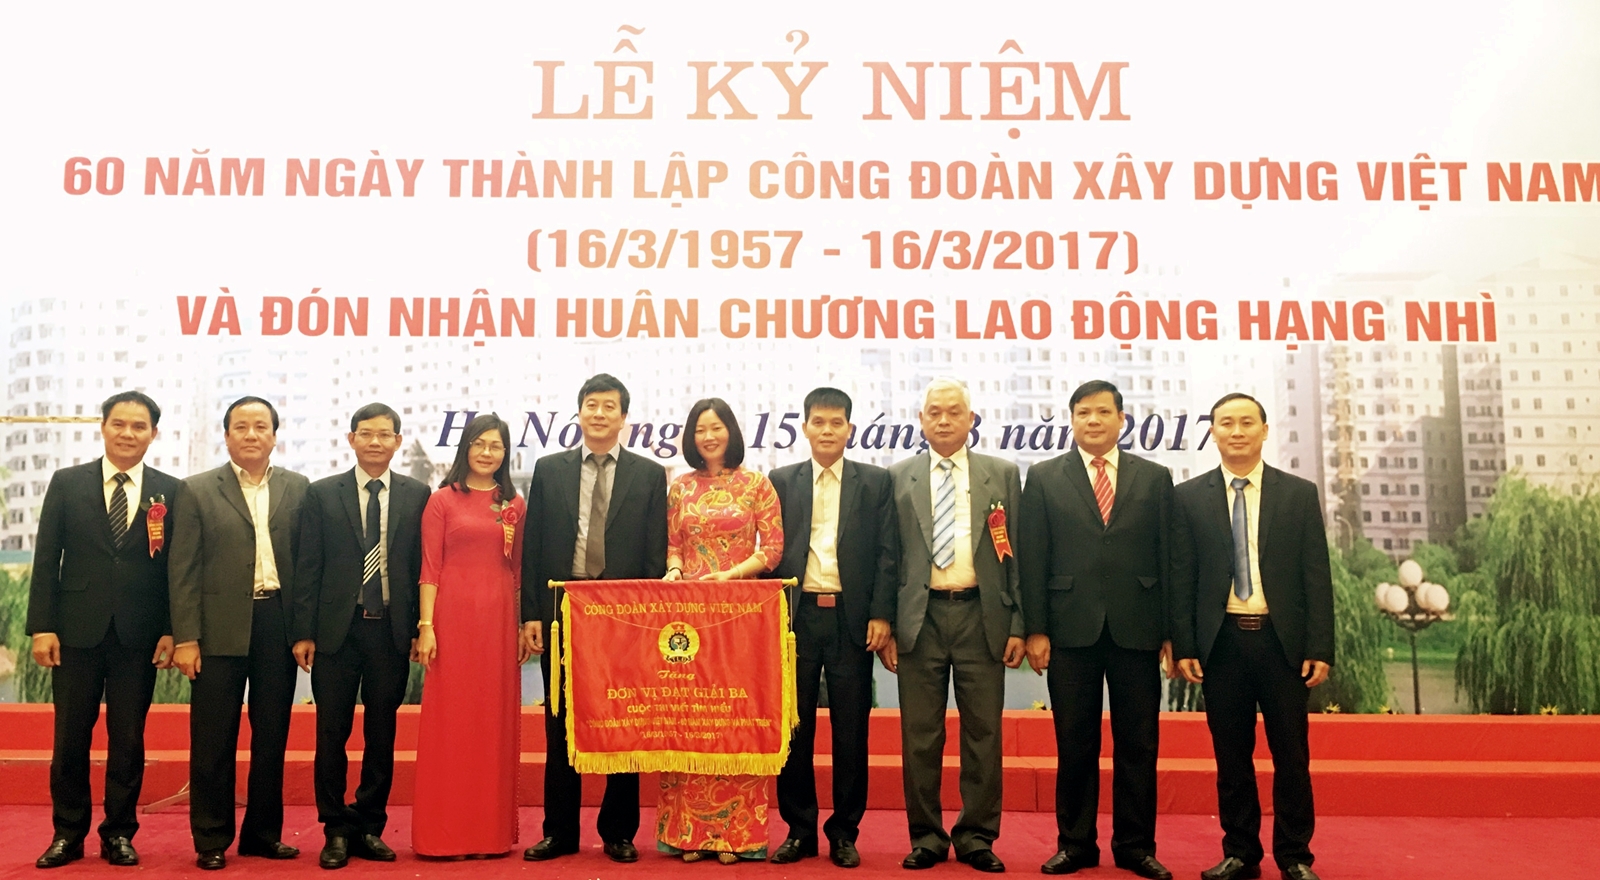 Tập thể, cá nhân Công đoàn TCty Viglacera đạt giải cuộc thi “Công đoàn Xây dựng Việt Nam – 60 năm xây dựng và phát triển”